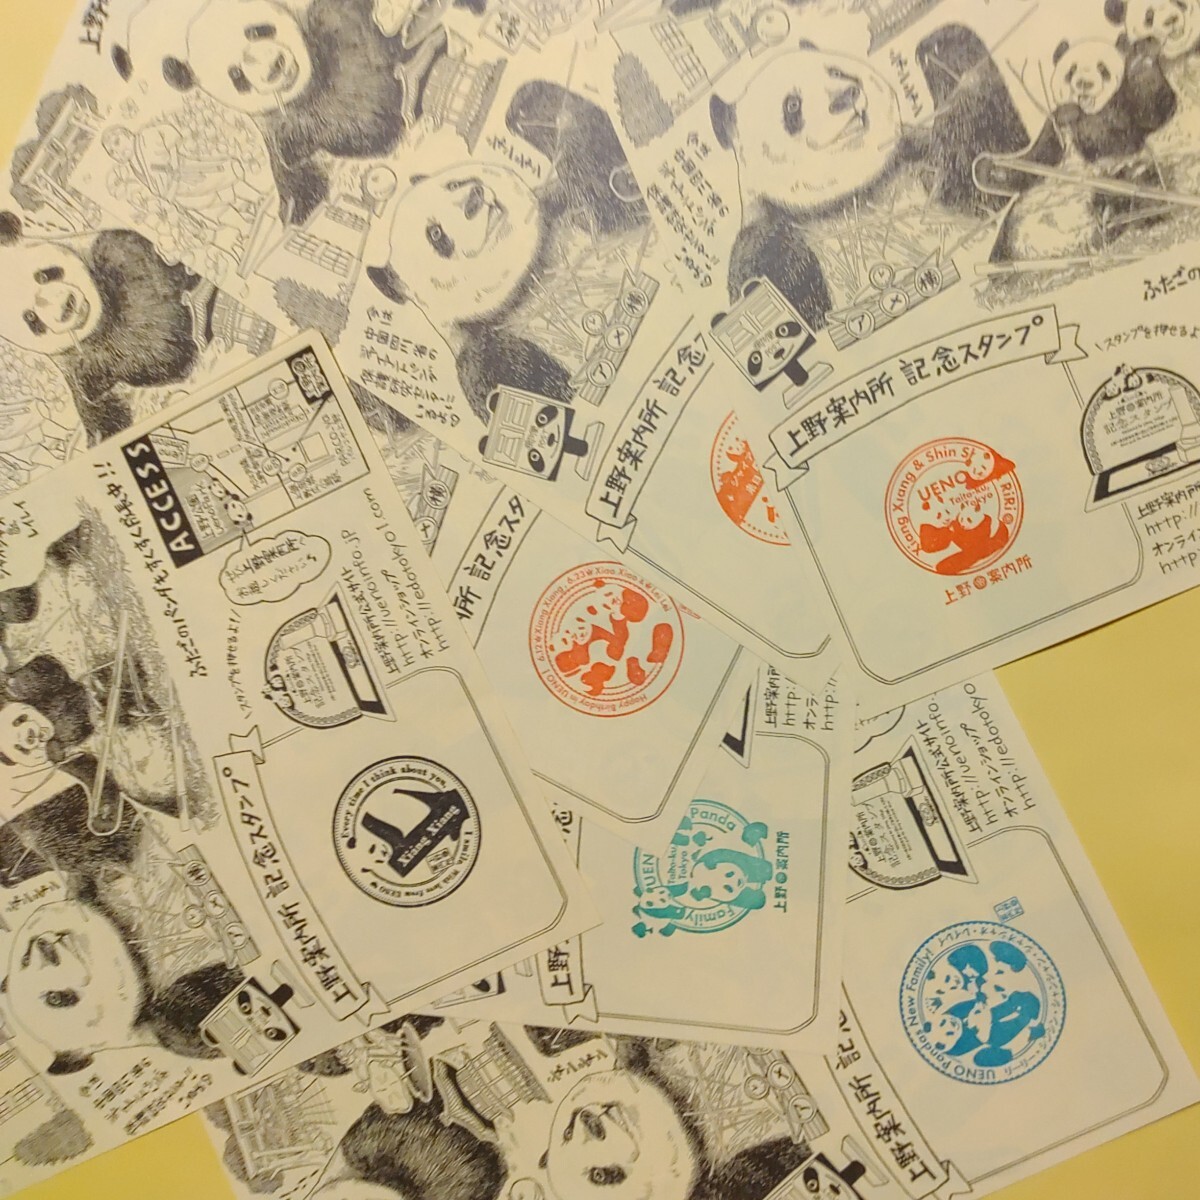 シャンシャン 上野パンダ Panda 上野限定特典カード 5点 スタンプノート マスキングテープ パンダ飴 パンダハガキ タンタン パンダの画像6